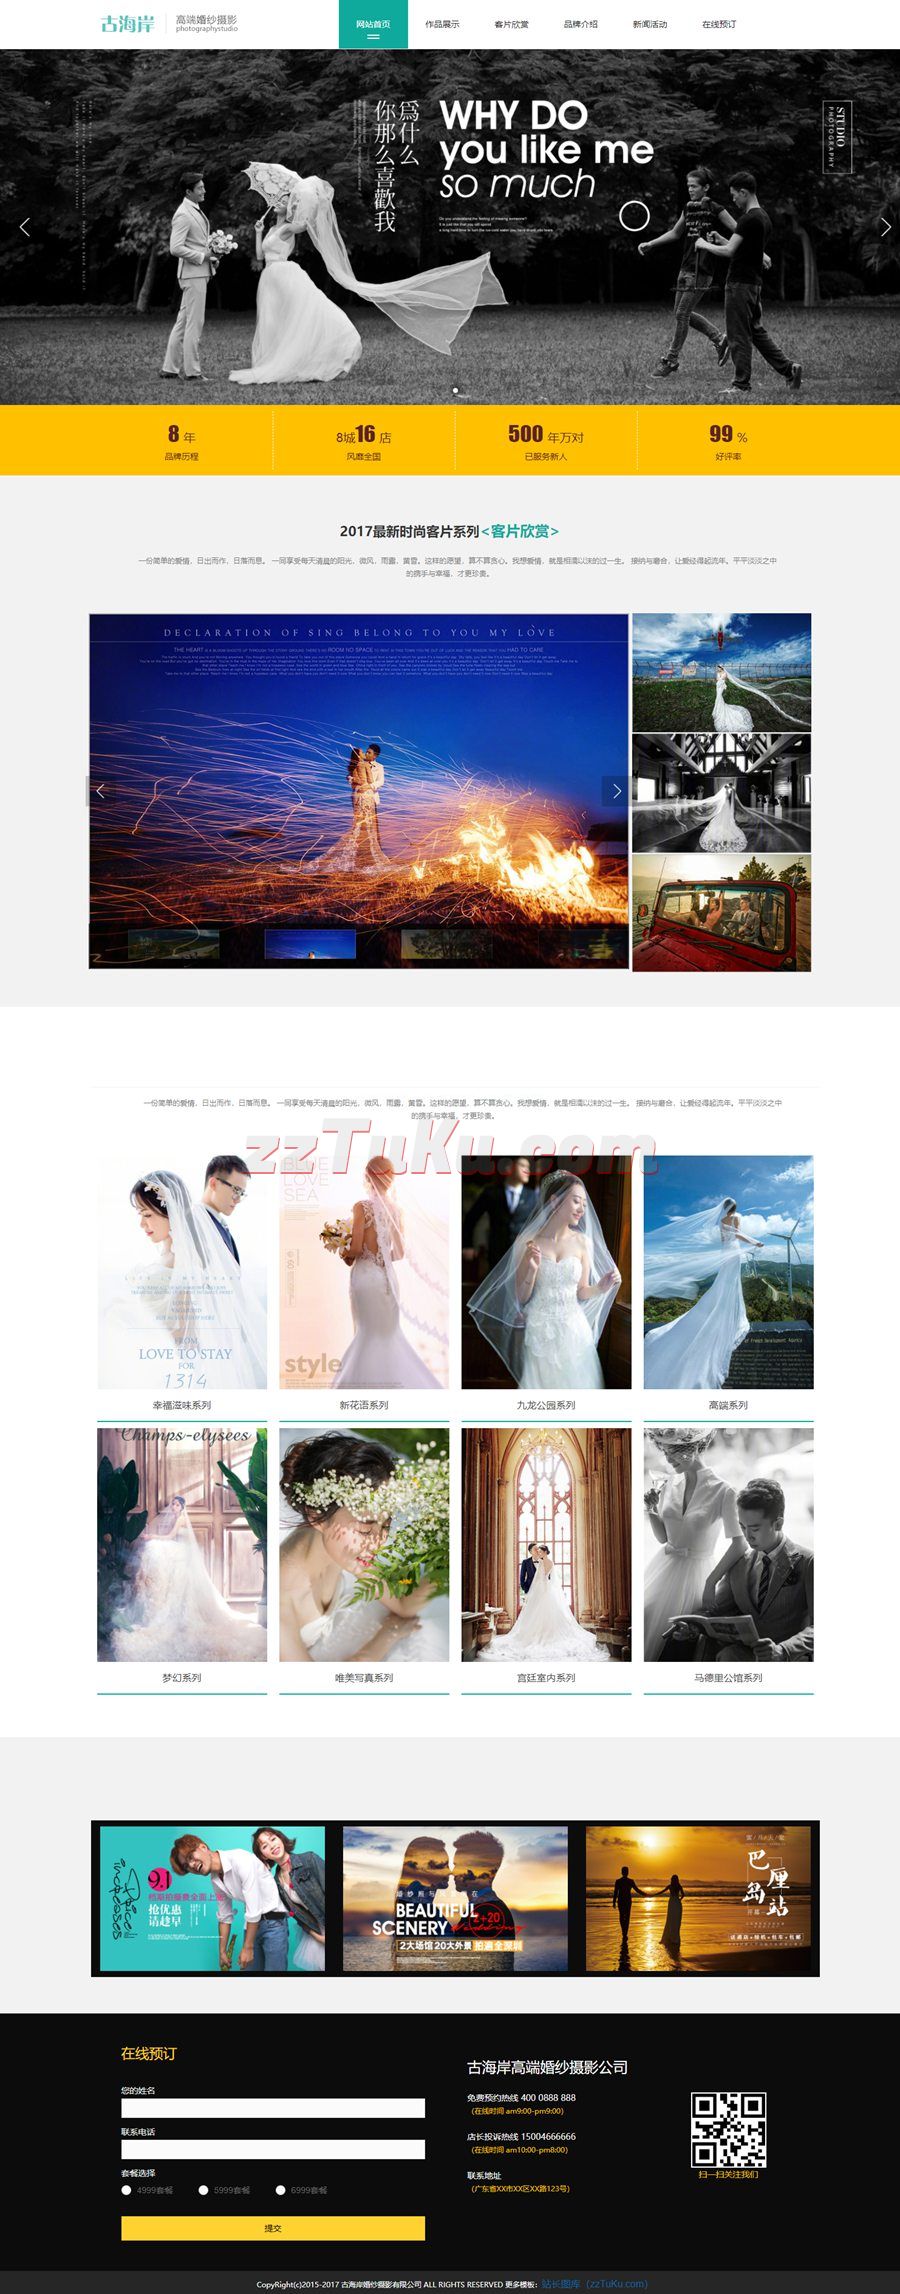 高端婚纱摄影工作室网站静态HTML模板